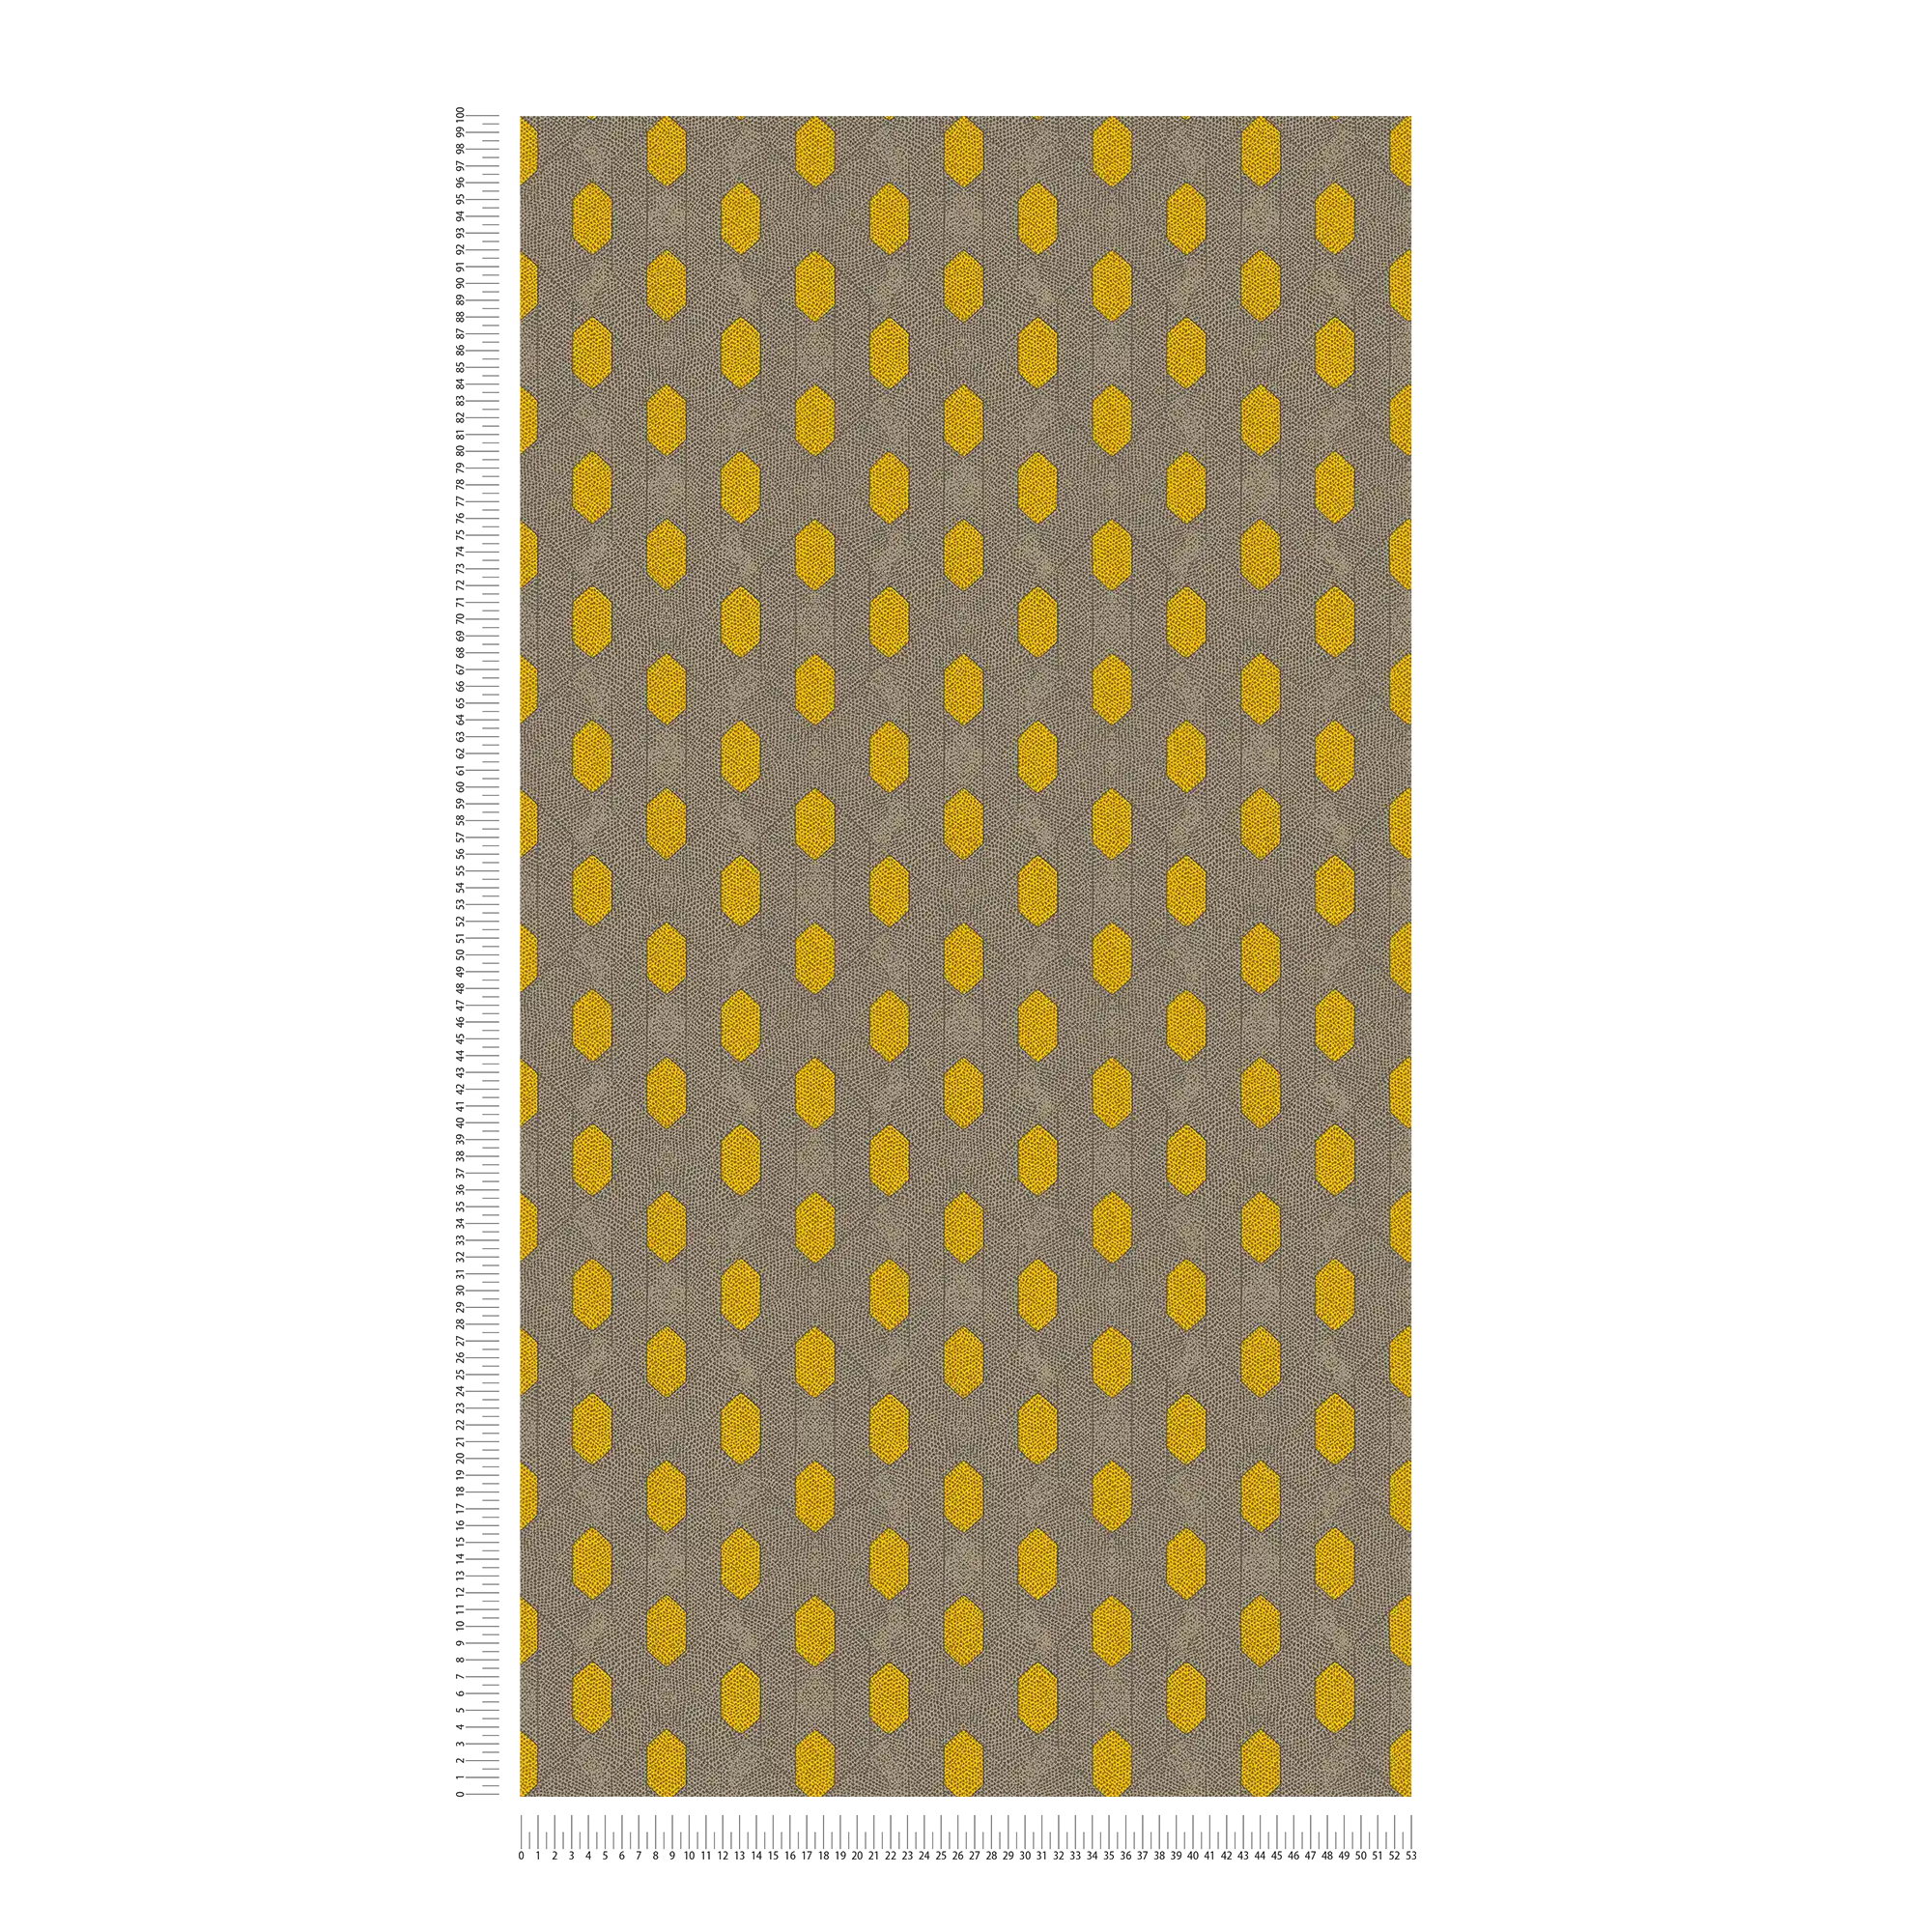             Papier peint intissé à motifs géométriques à pois - jaune, gris, marron
        